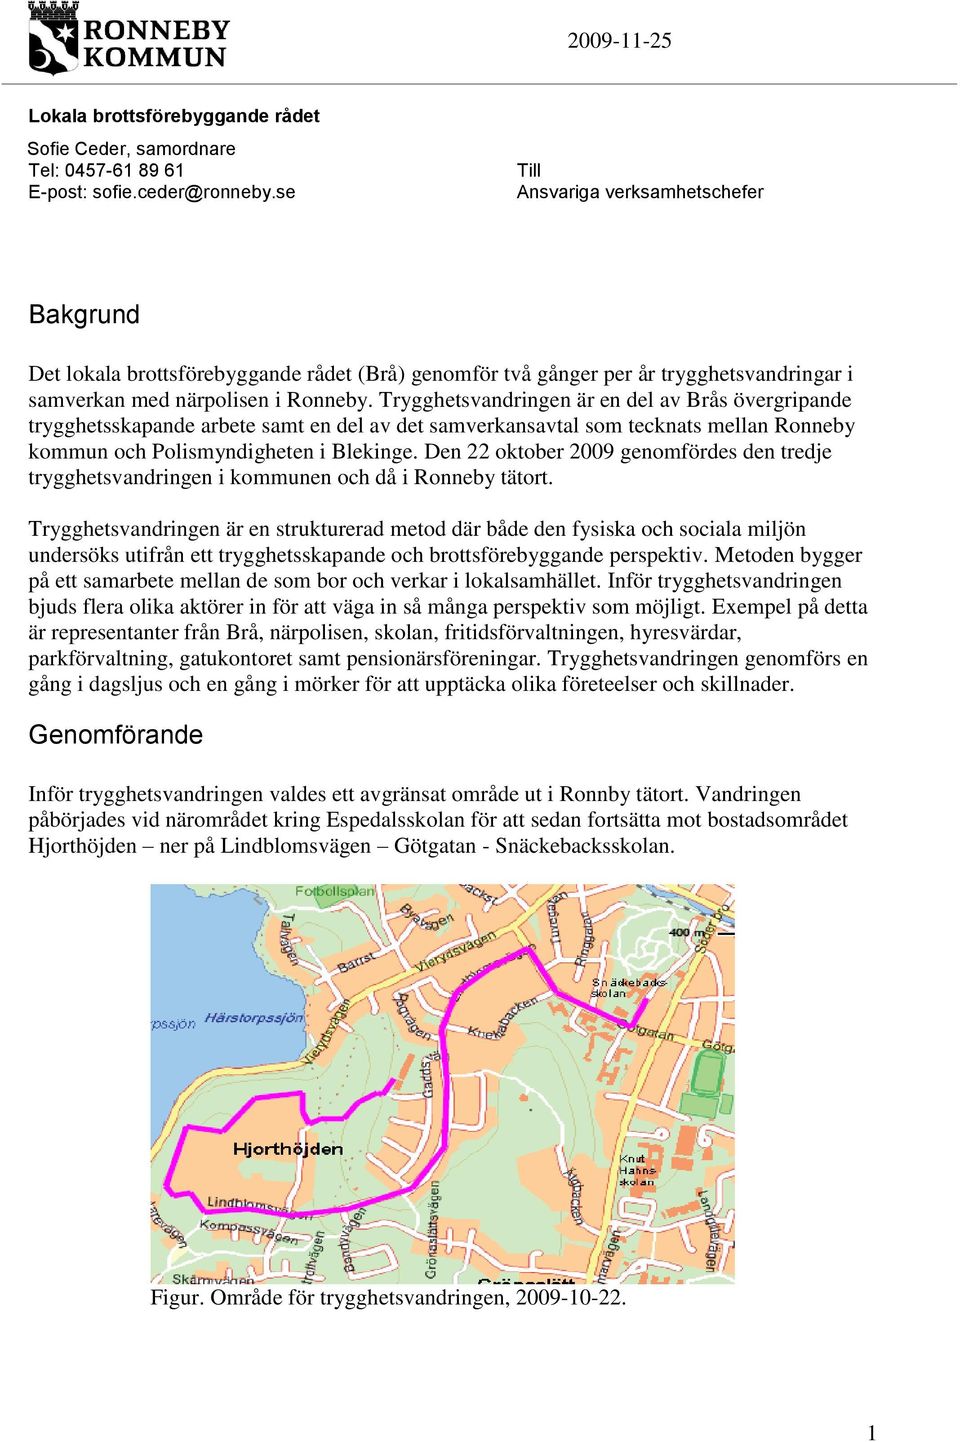 Trygghetsvandringen är en del av Brås övergripande trygghetsskapande arbete samt en del av det samverkansavtal som tecknats mellan Ronneby kommun och Polismyndigheten i Blekinge.